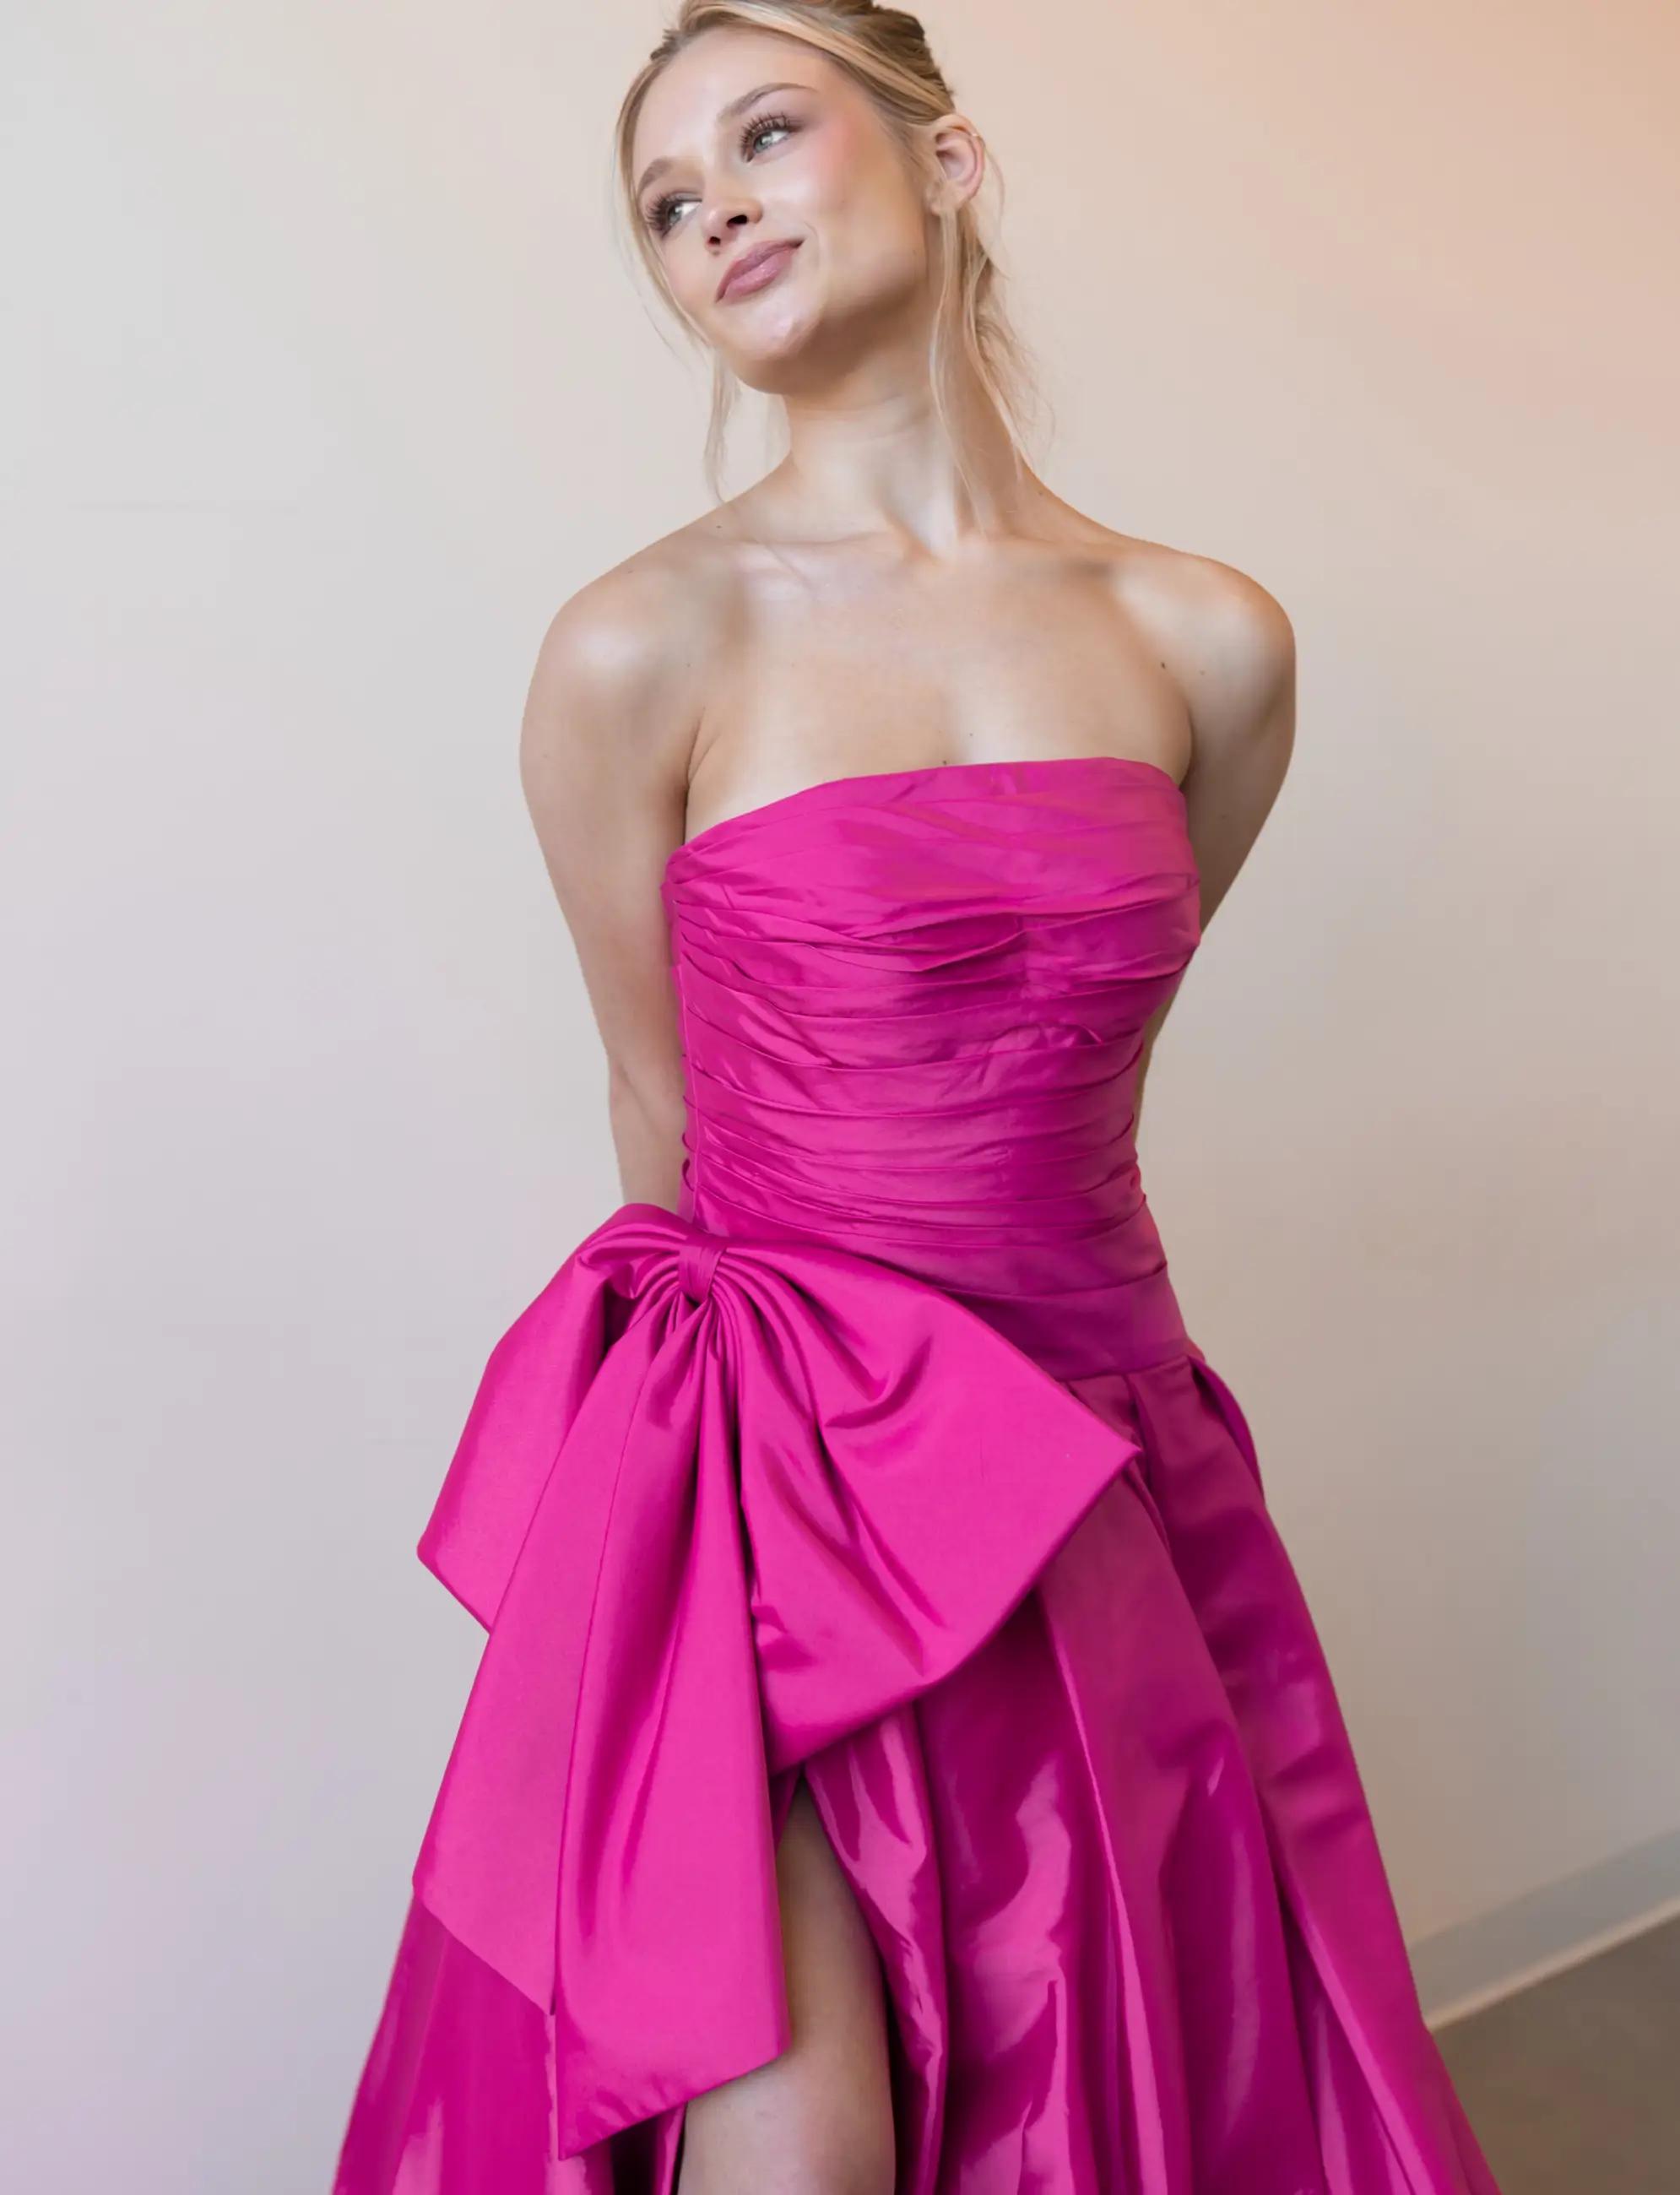 Model wearing pink prom dress